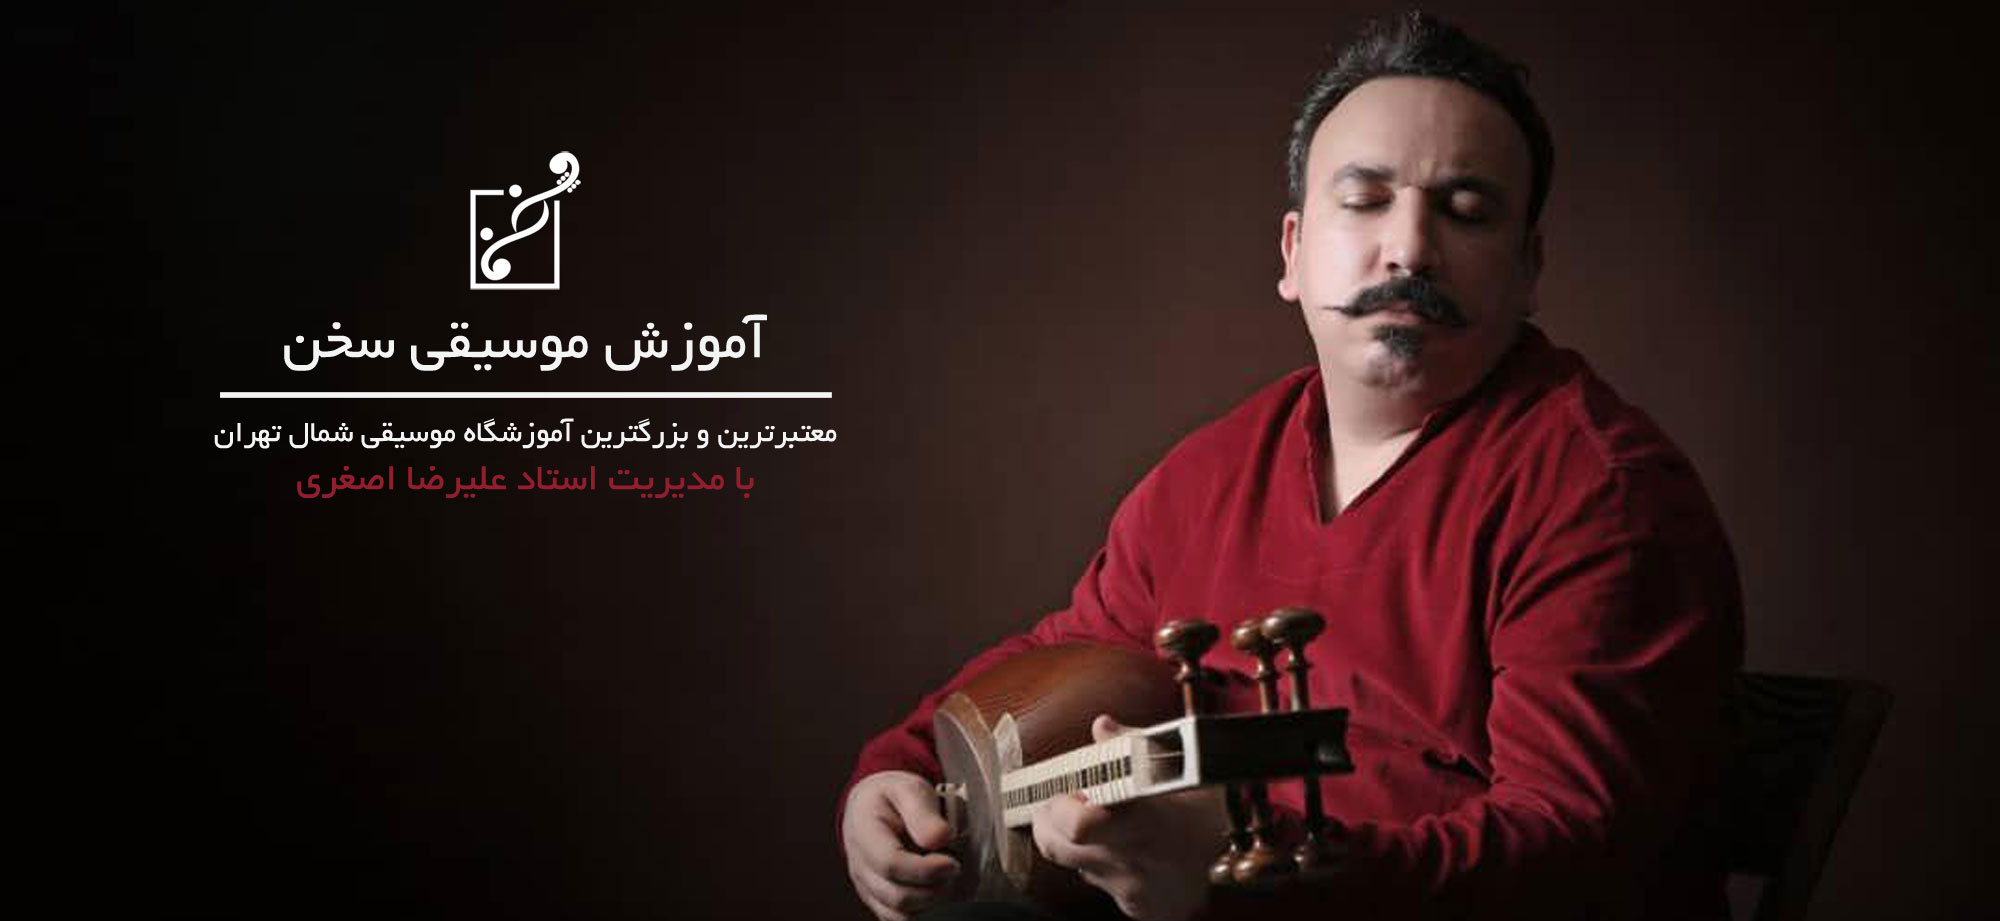 استاد عليرضا اصغري مدرس و نوازنده تار و سه تار